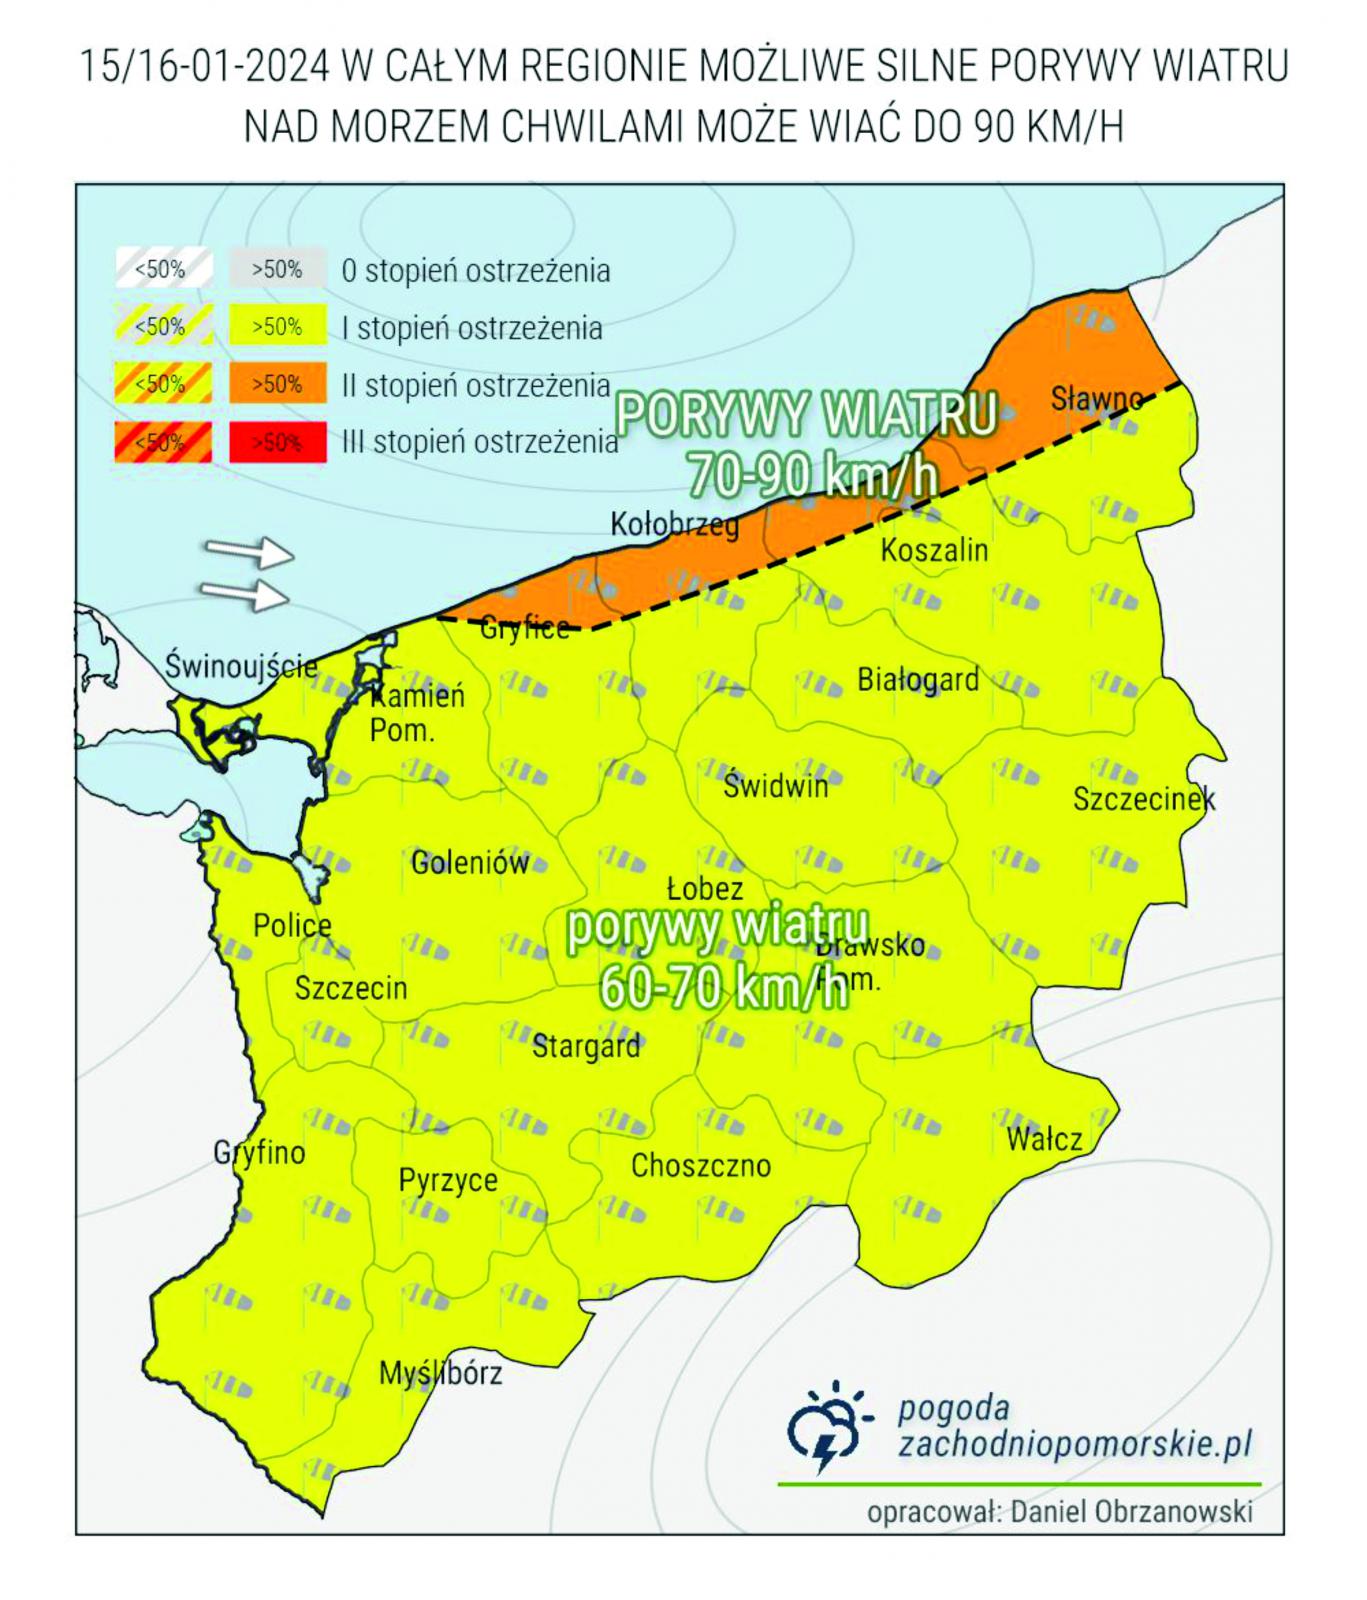 Mapa ze strony: pogoda-zachodniopomorskie.pl